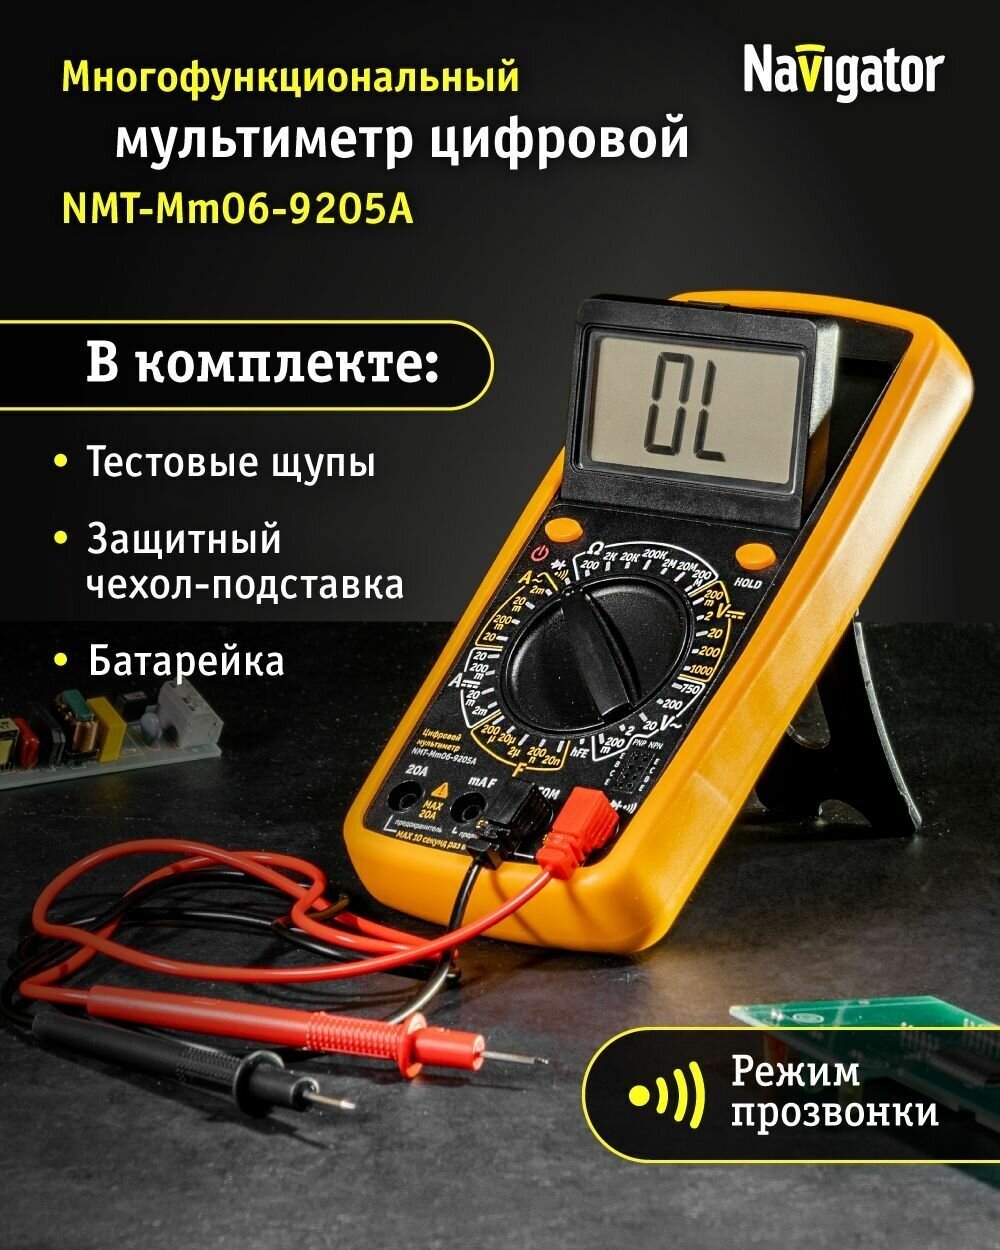 Navigator мультиметр 93 590 nmt-mm06-9205a (9205a) 93590